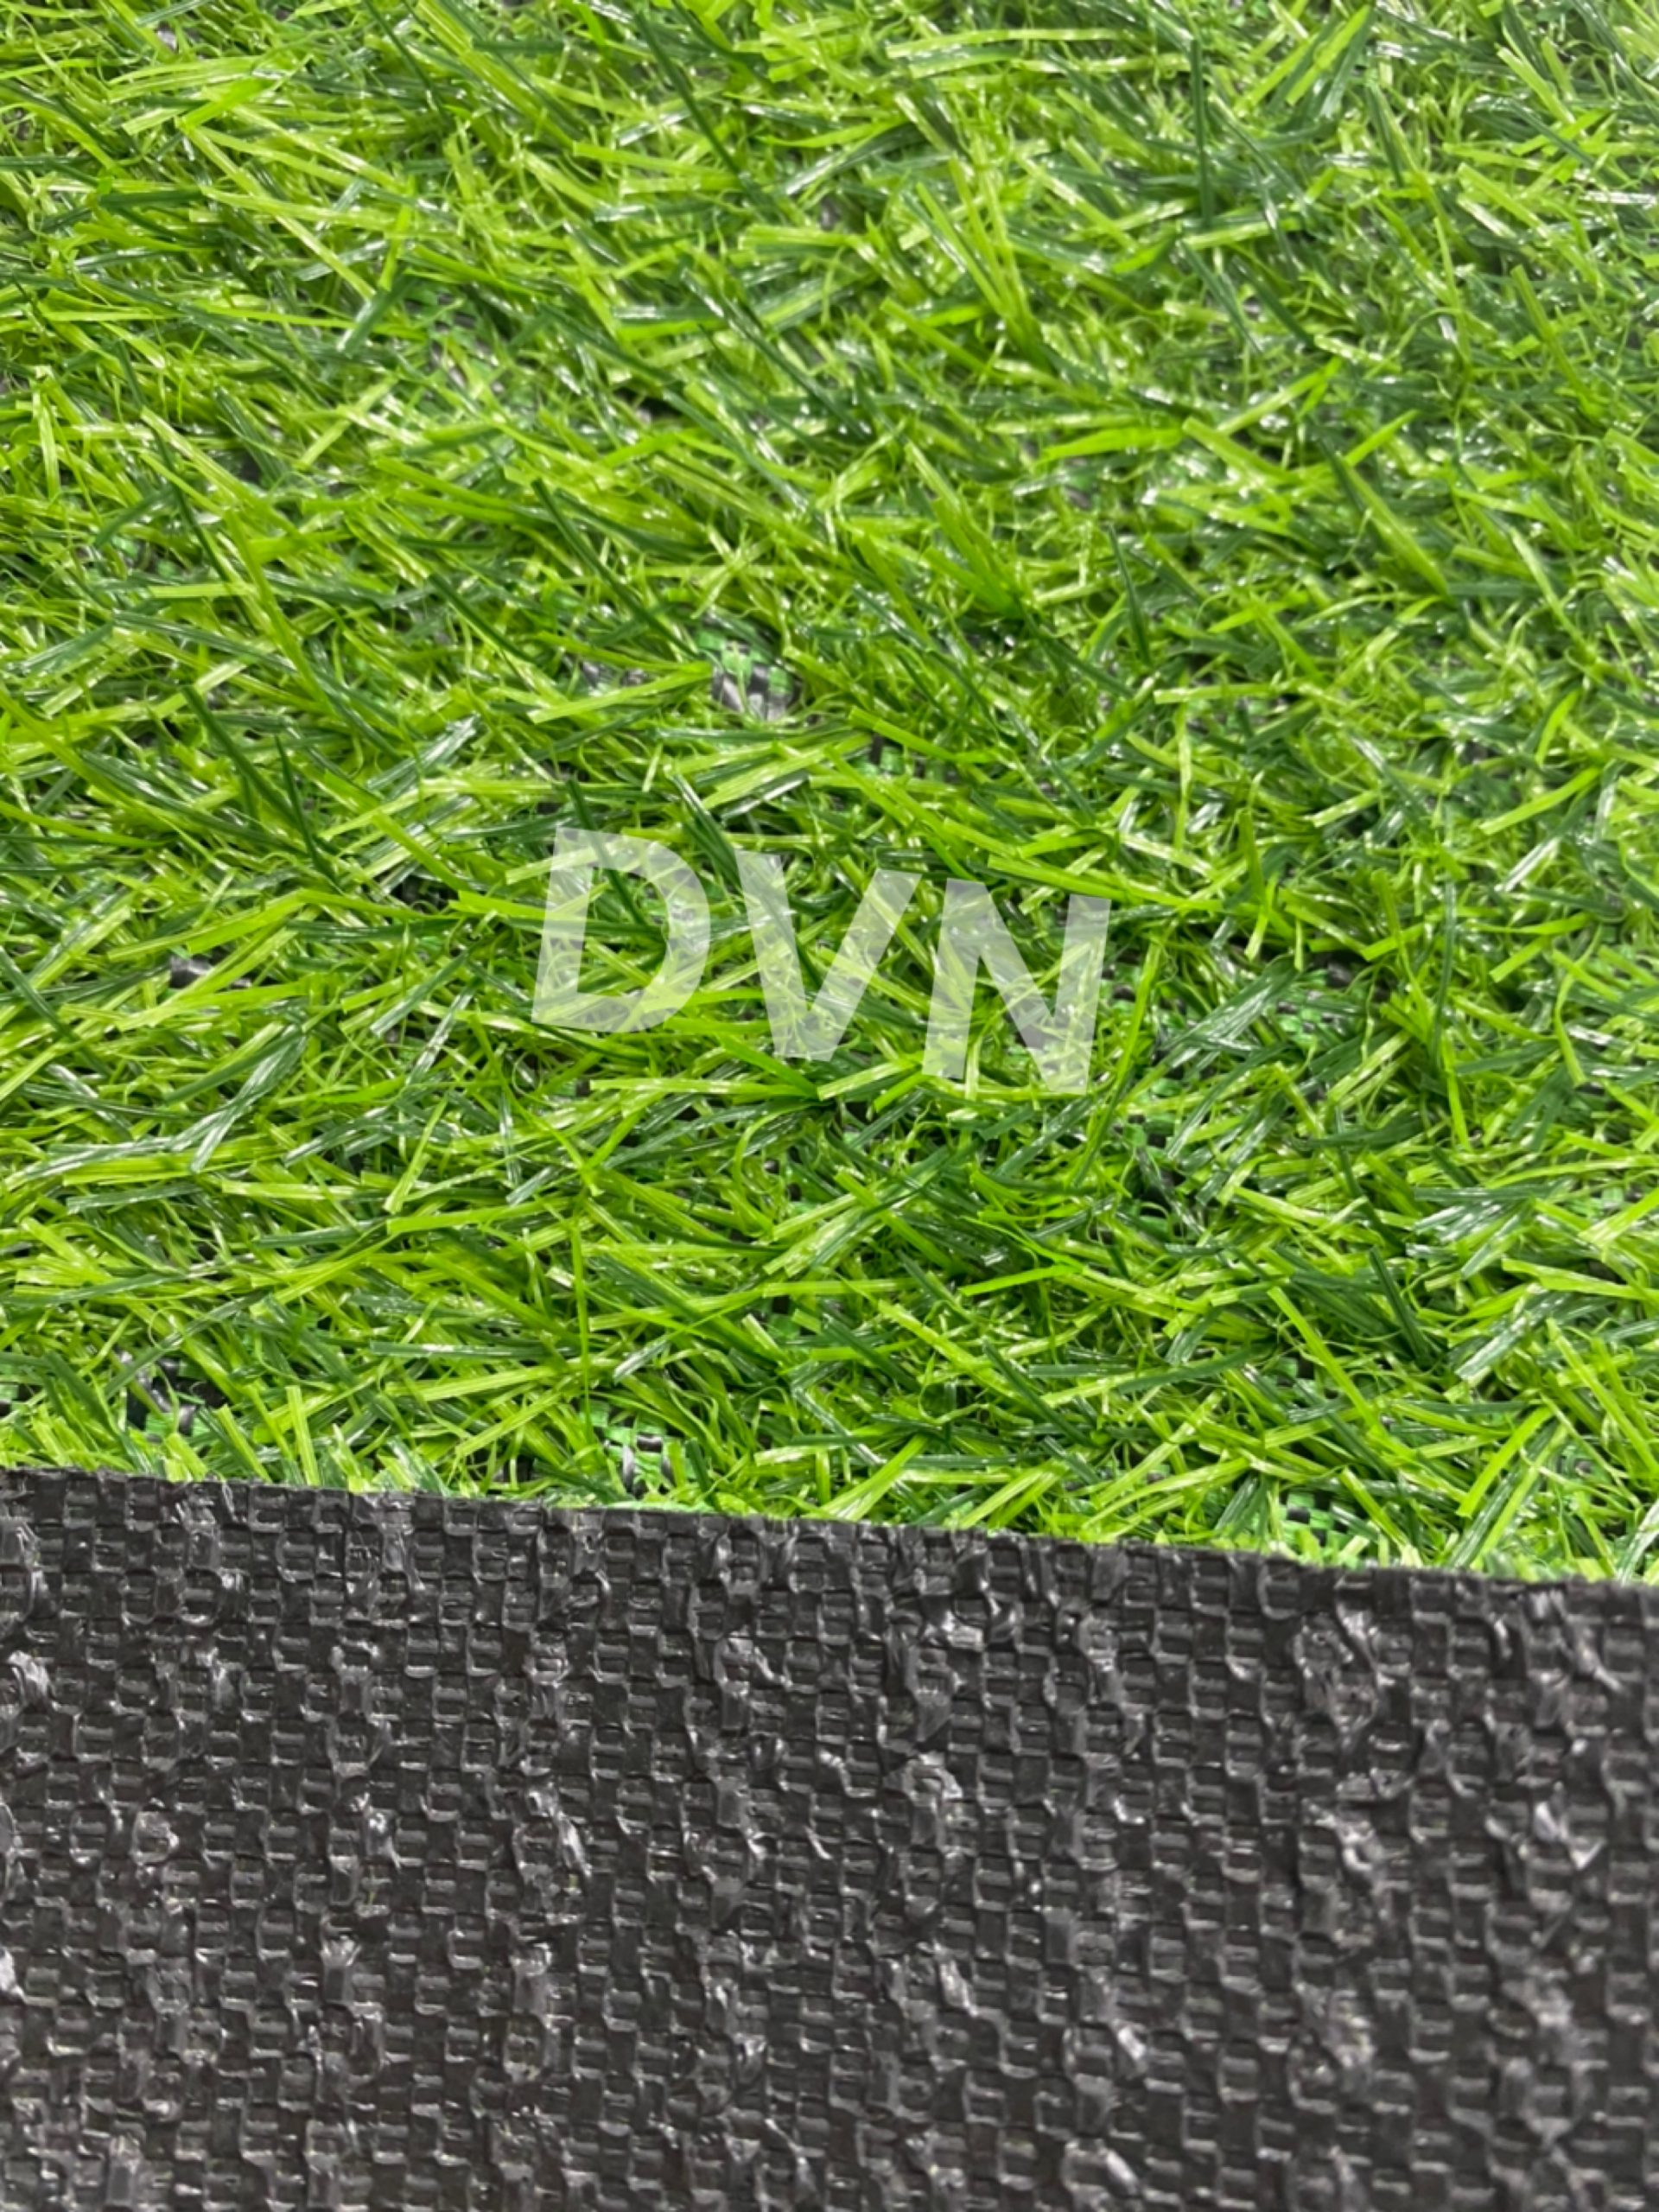 Sản phẩm cỏ nhân tạo sân vườn DVN S10-20411-XN